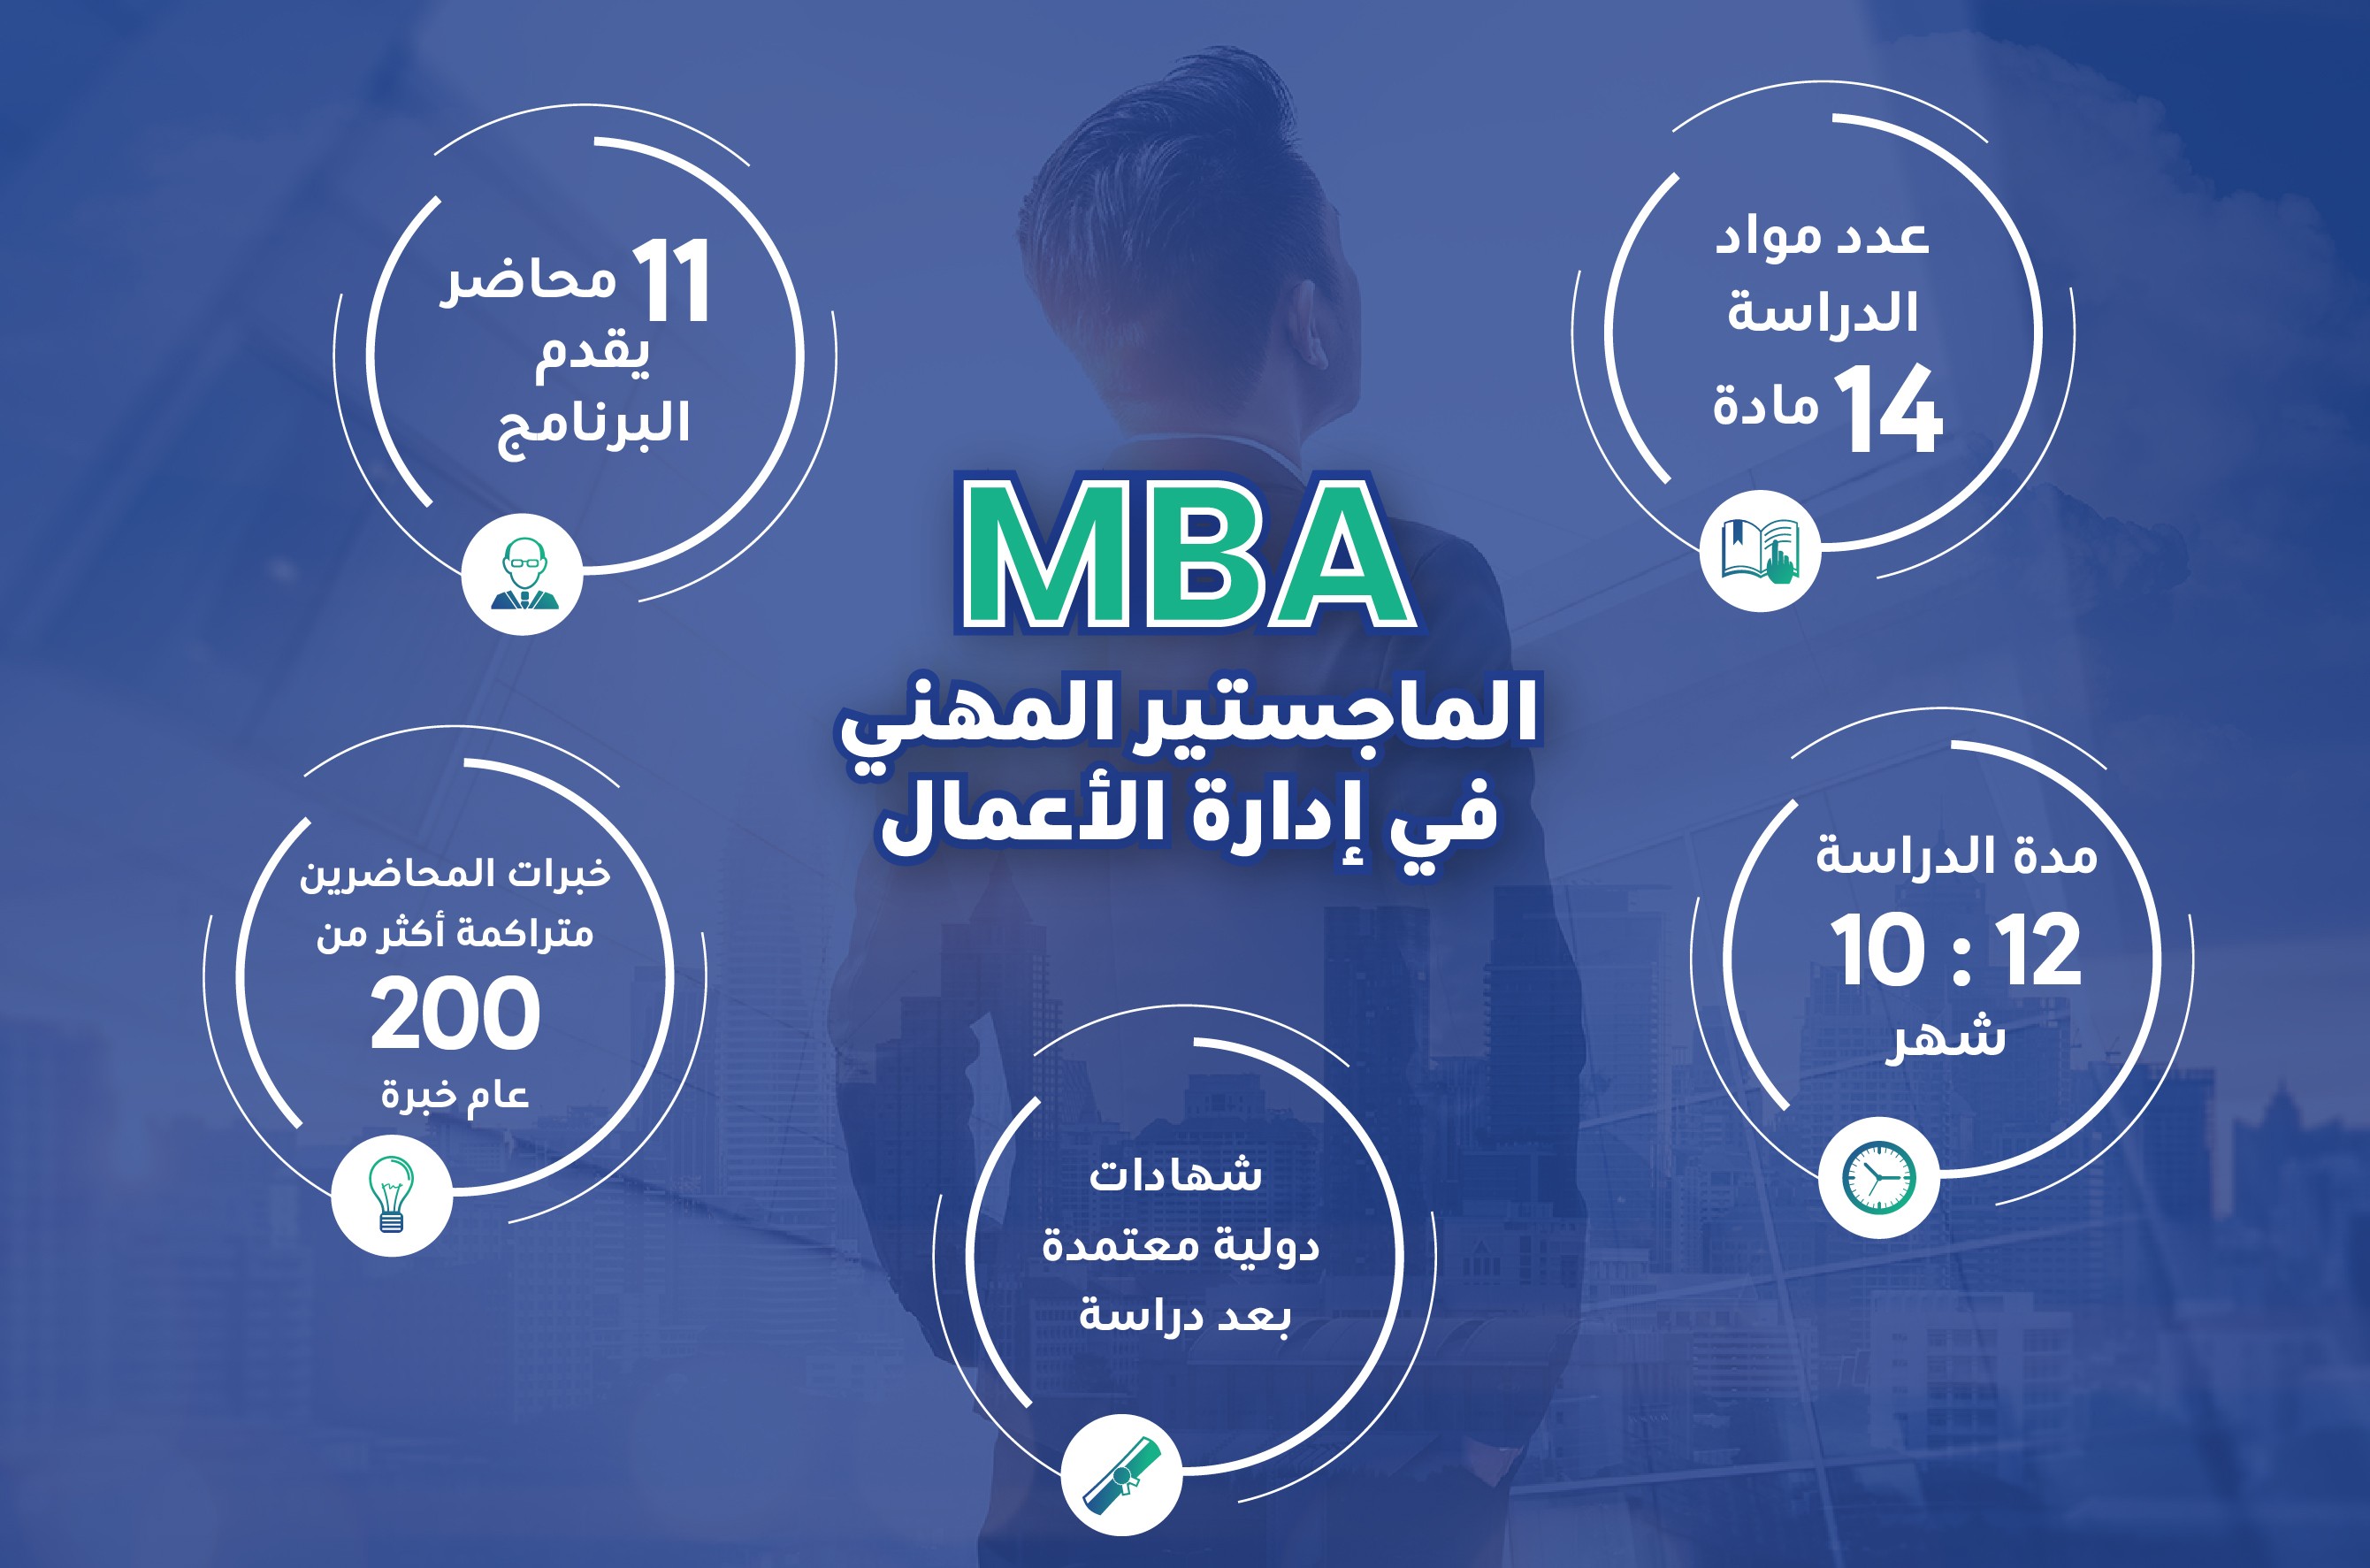 ماجستير ادارة الأعمال - MBA